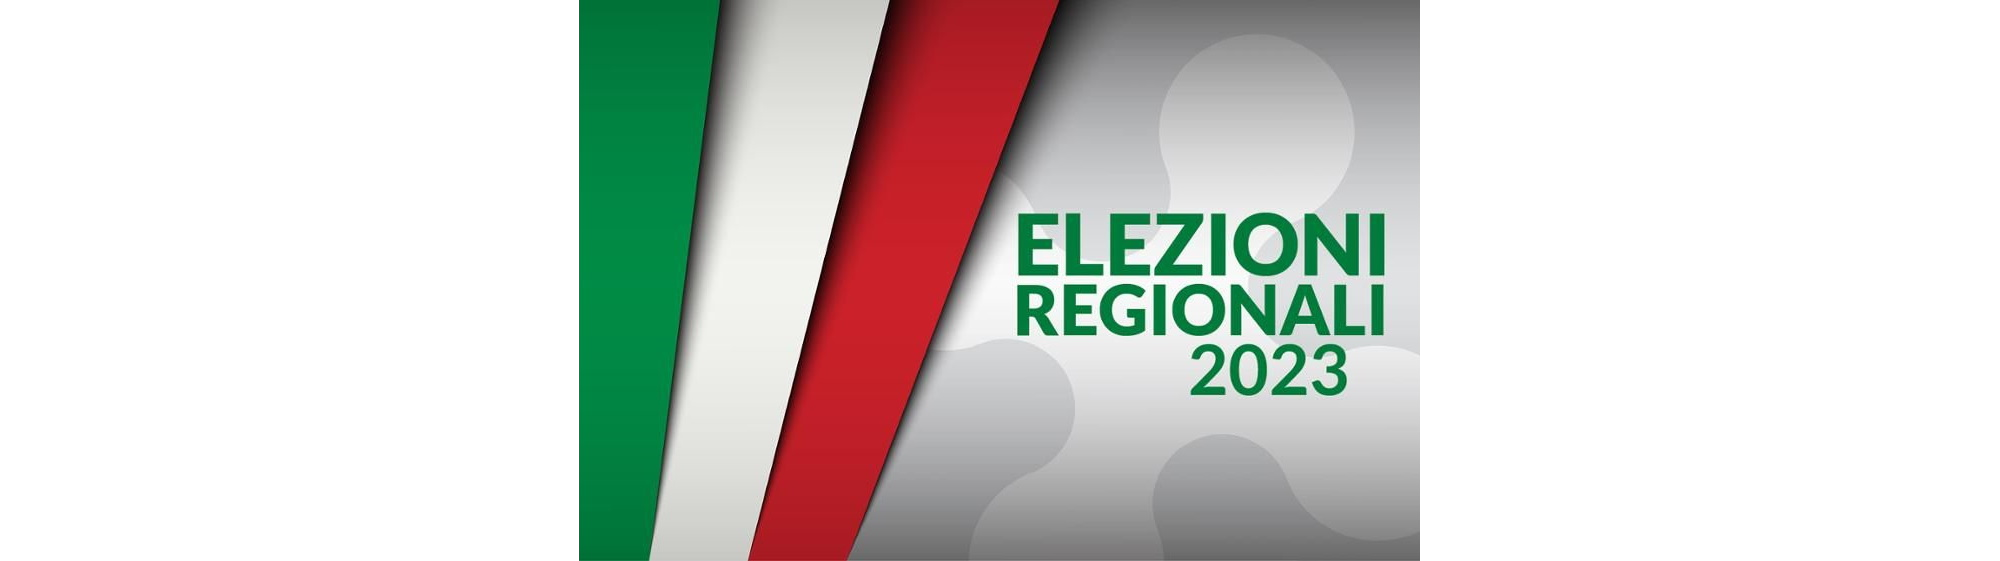 Speciale Elezioni Regionali 2023